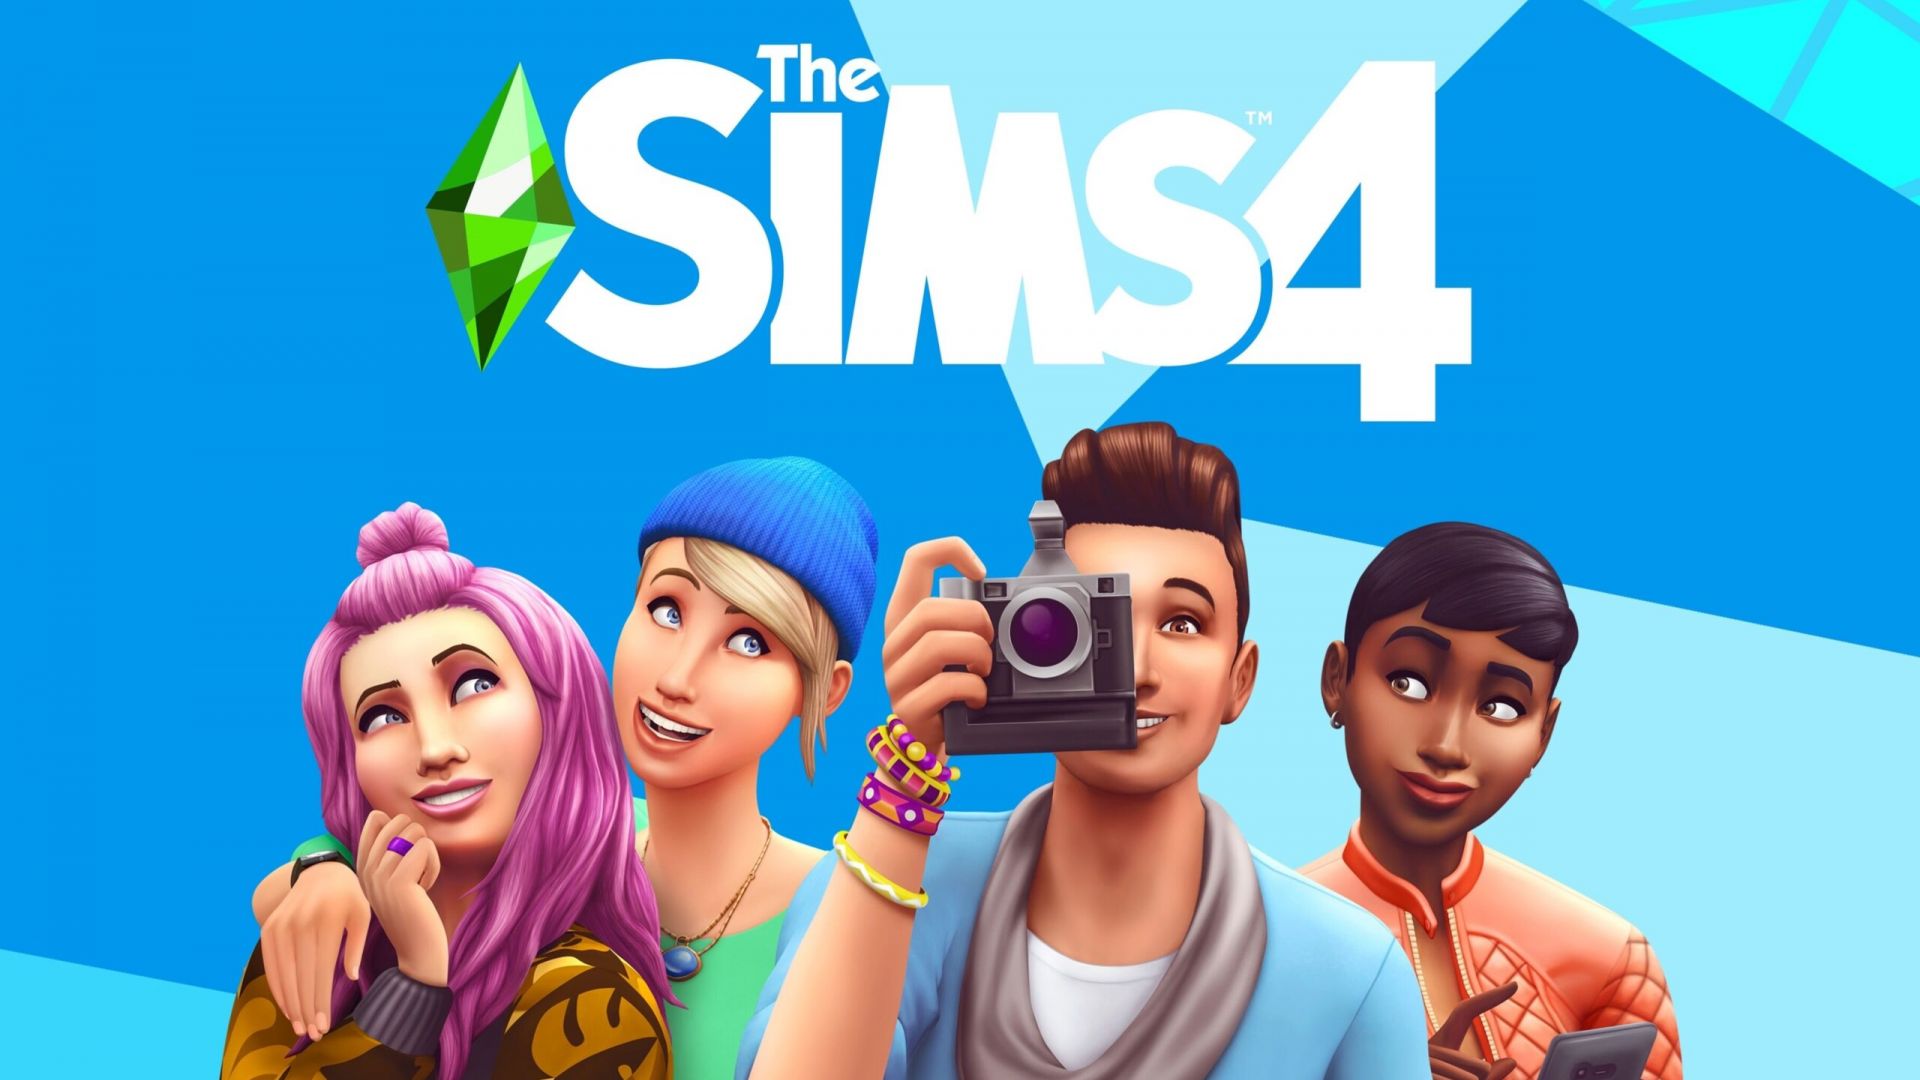 Les Sims 4 : deux DLCs gratuits, mais pas pour tout le monde